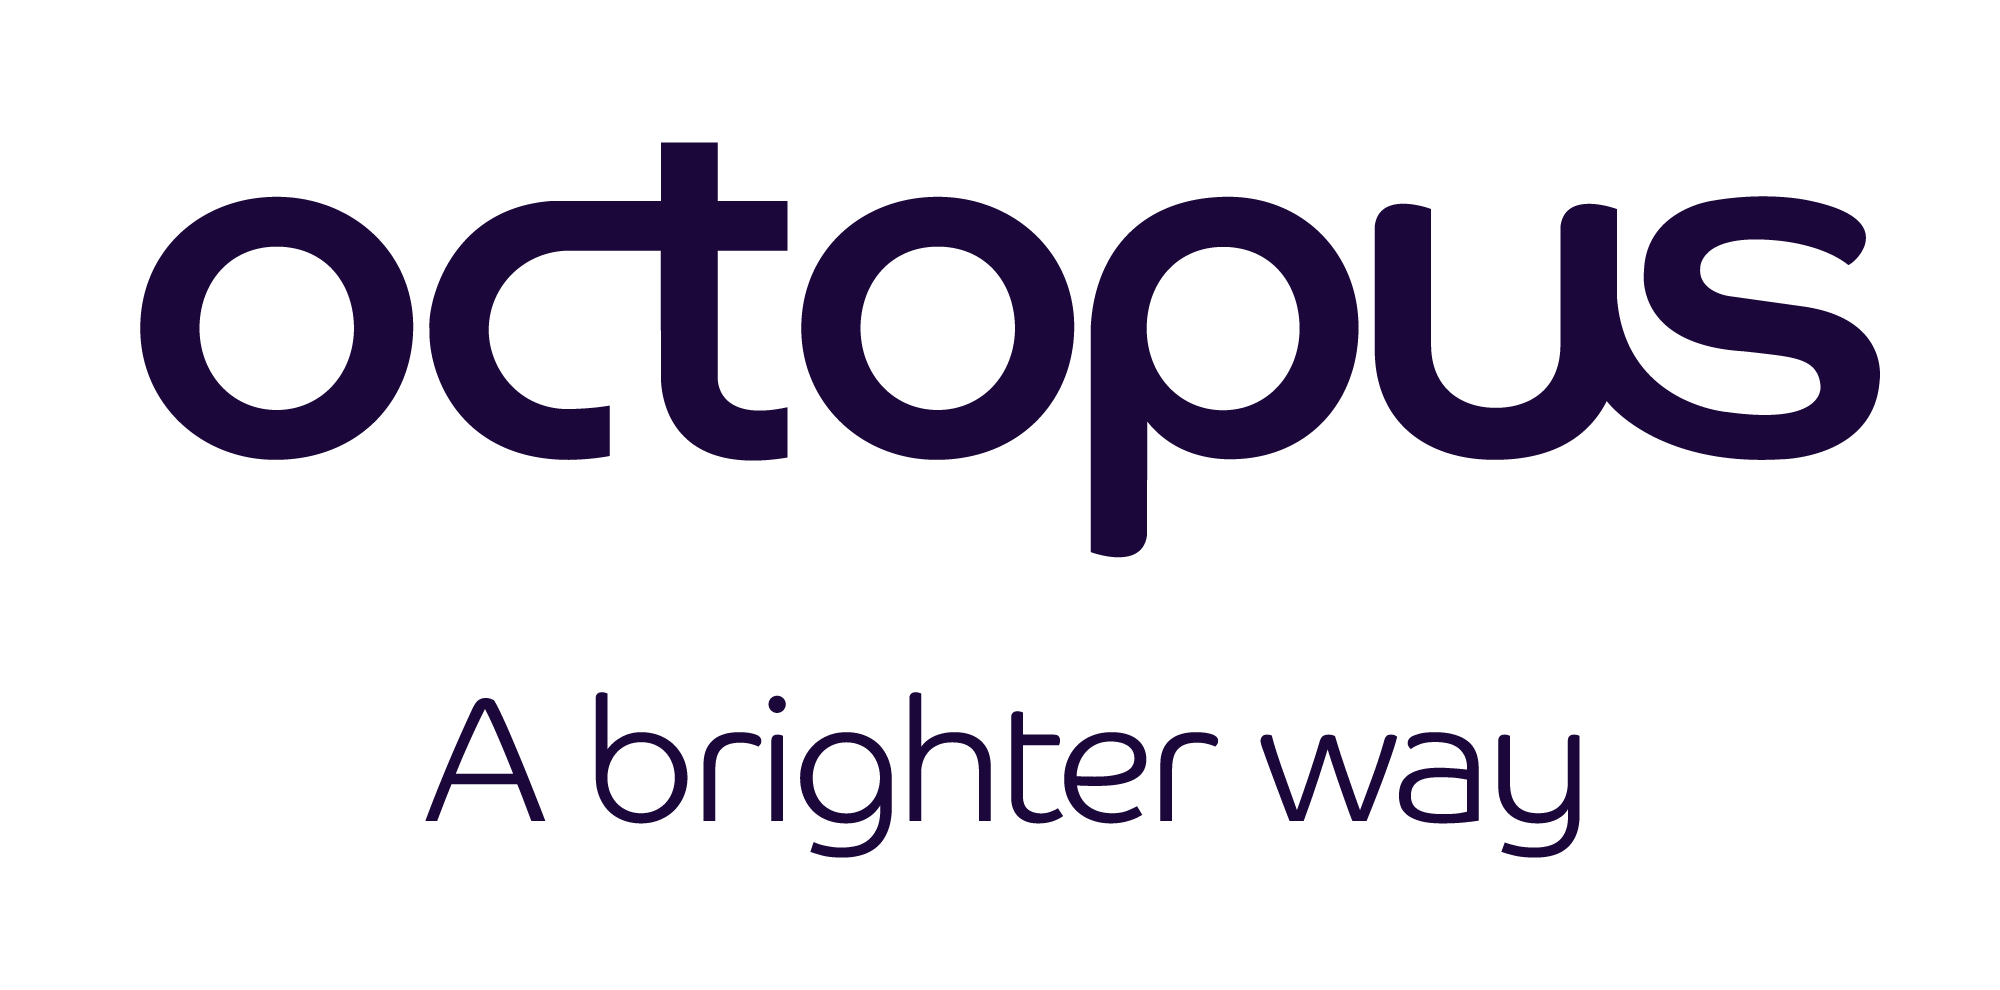 Octopus Logo